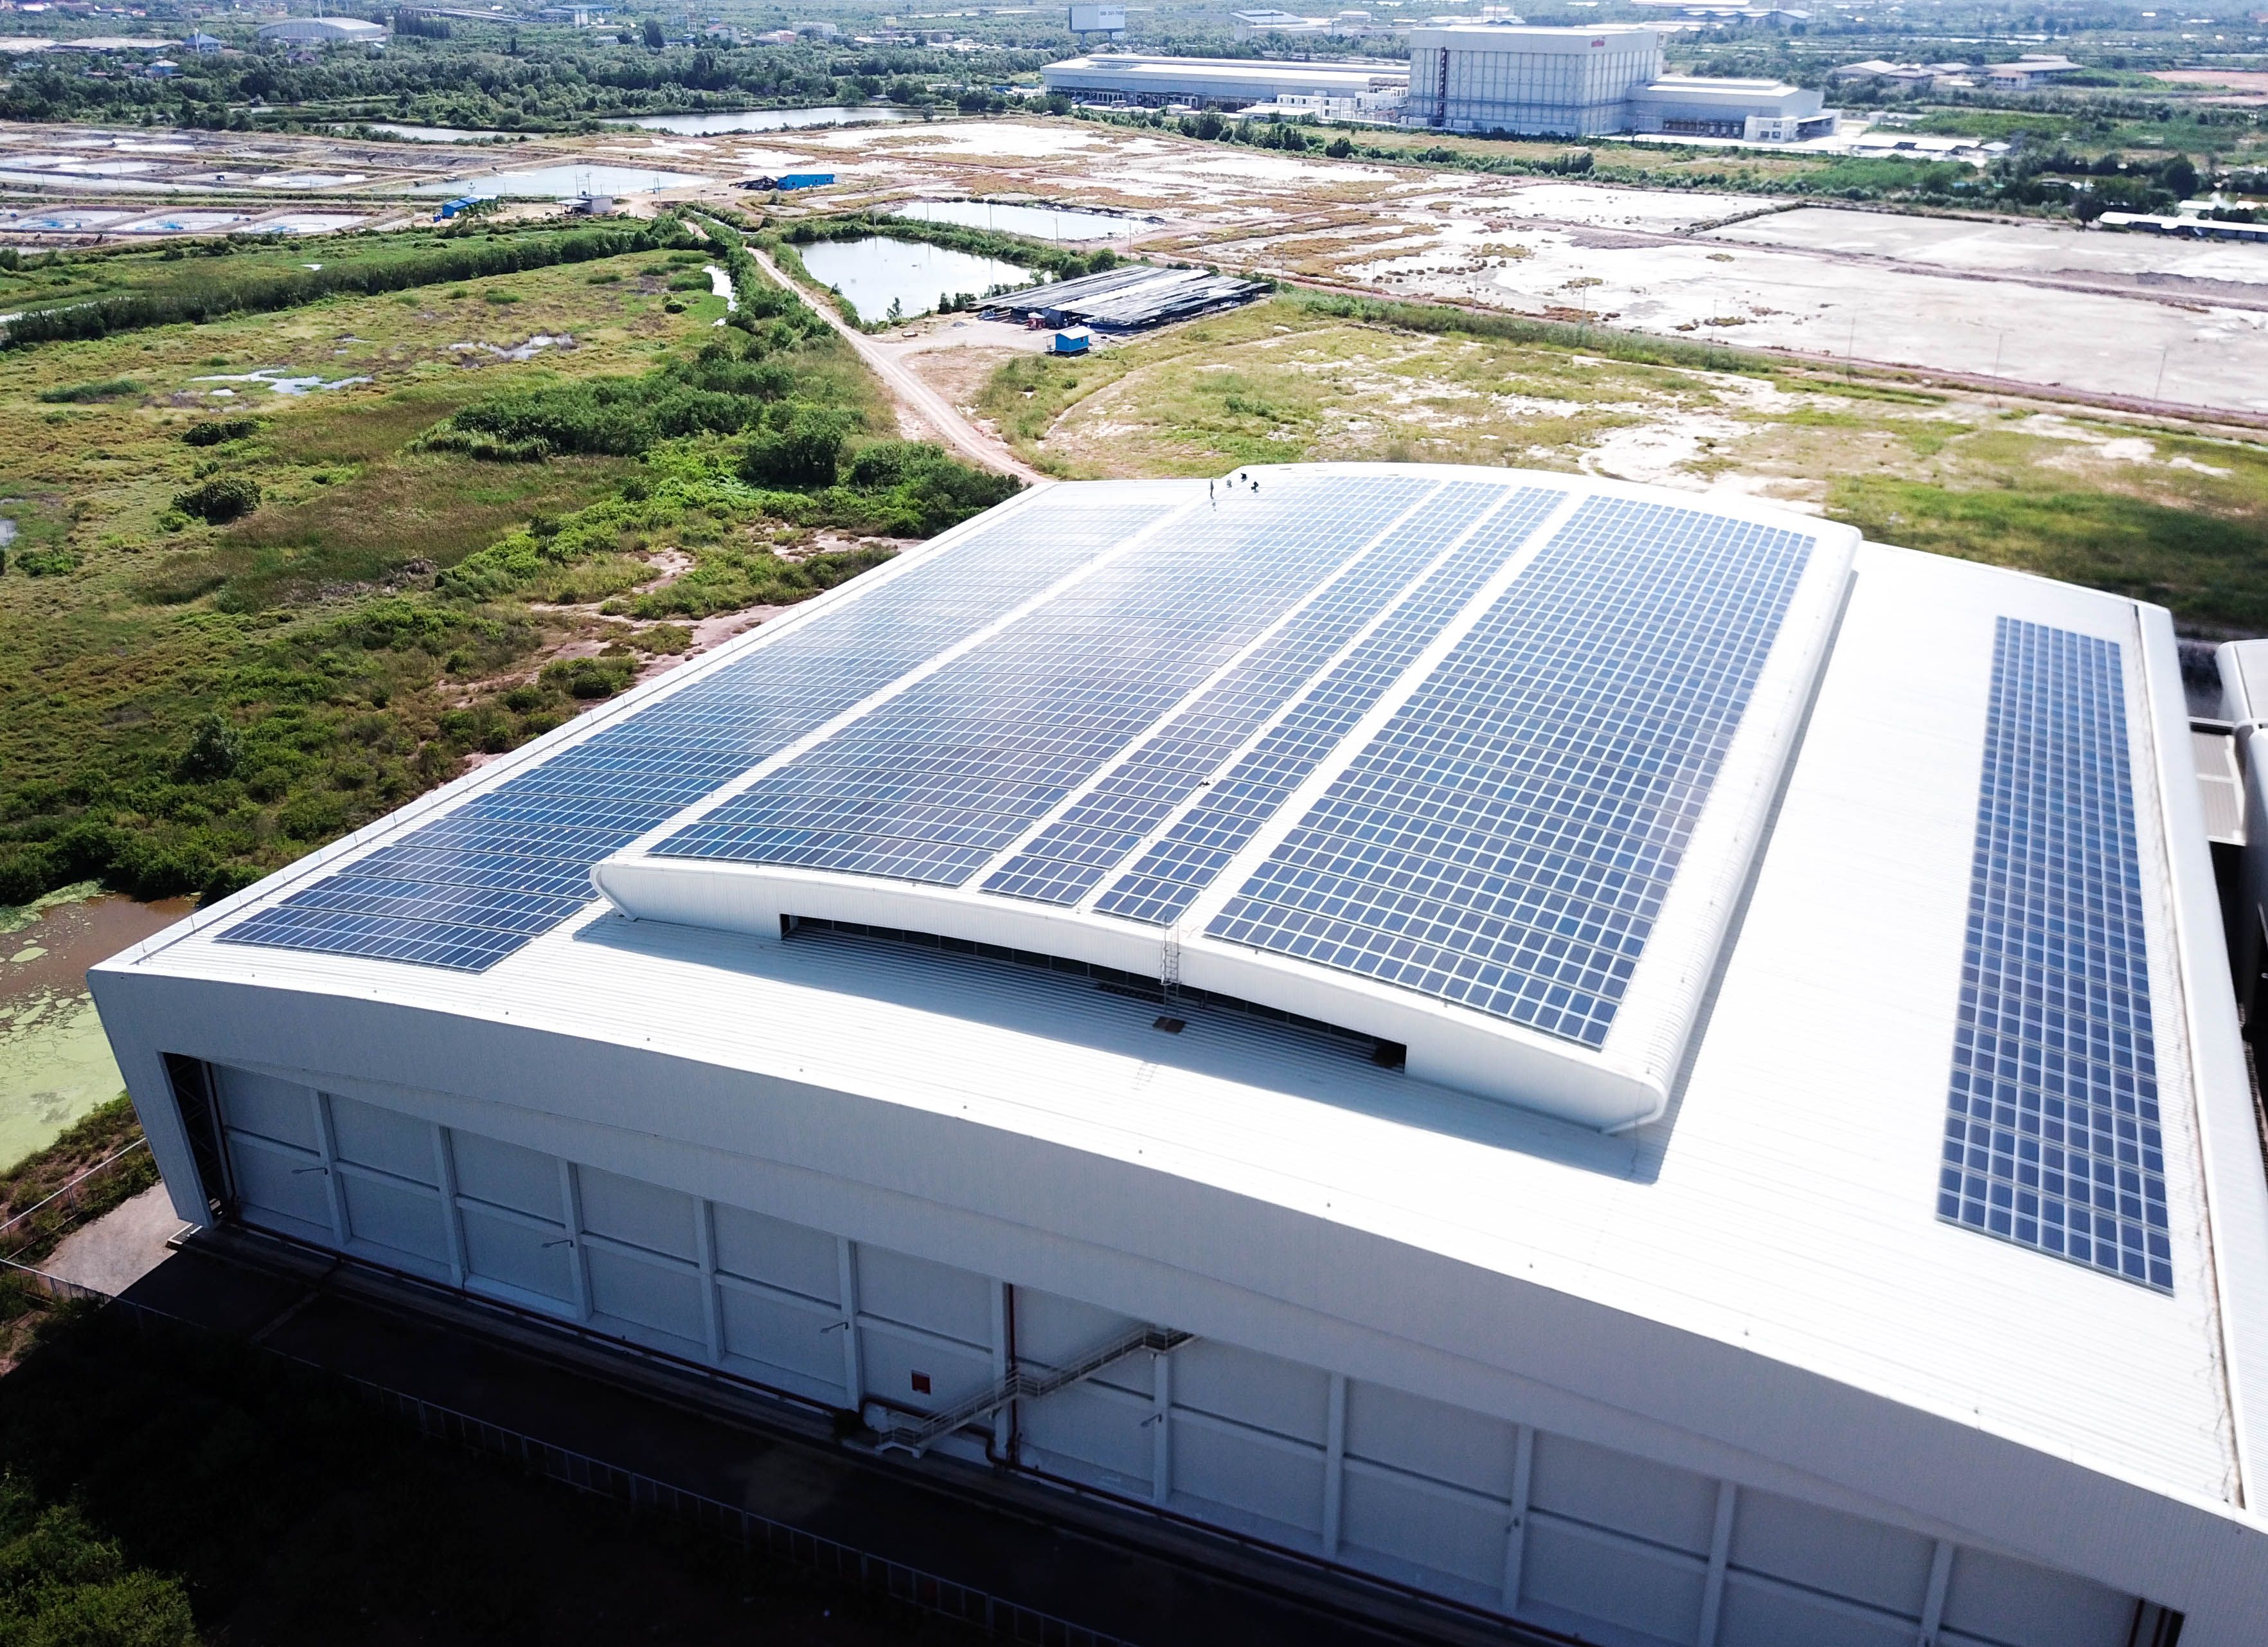 กลุ่มไทยยูเนี่ยน ผนึก Impact Solar ก้าวเป็นอุตสาหกรรมอาหารไทยรายแรกที่ซื้อไฟฟ้าโซล่าร์จากเอกชน